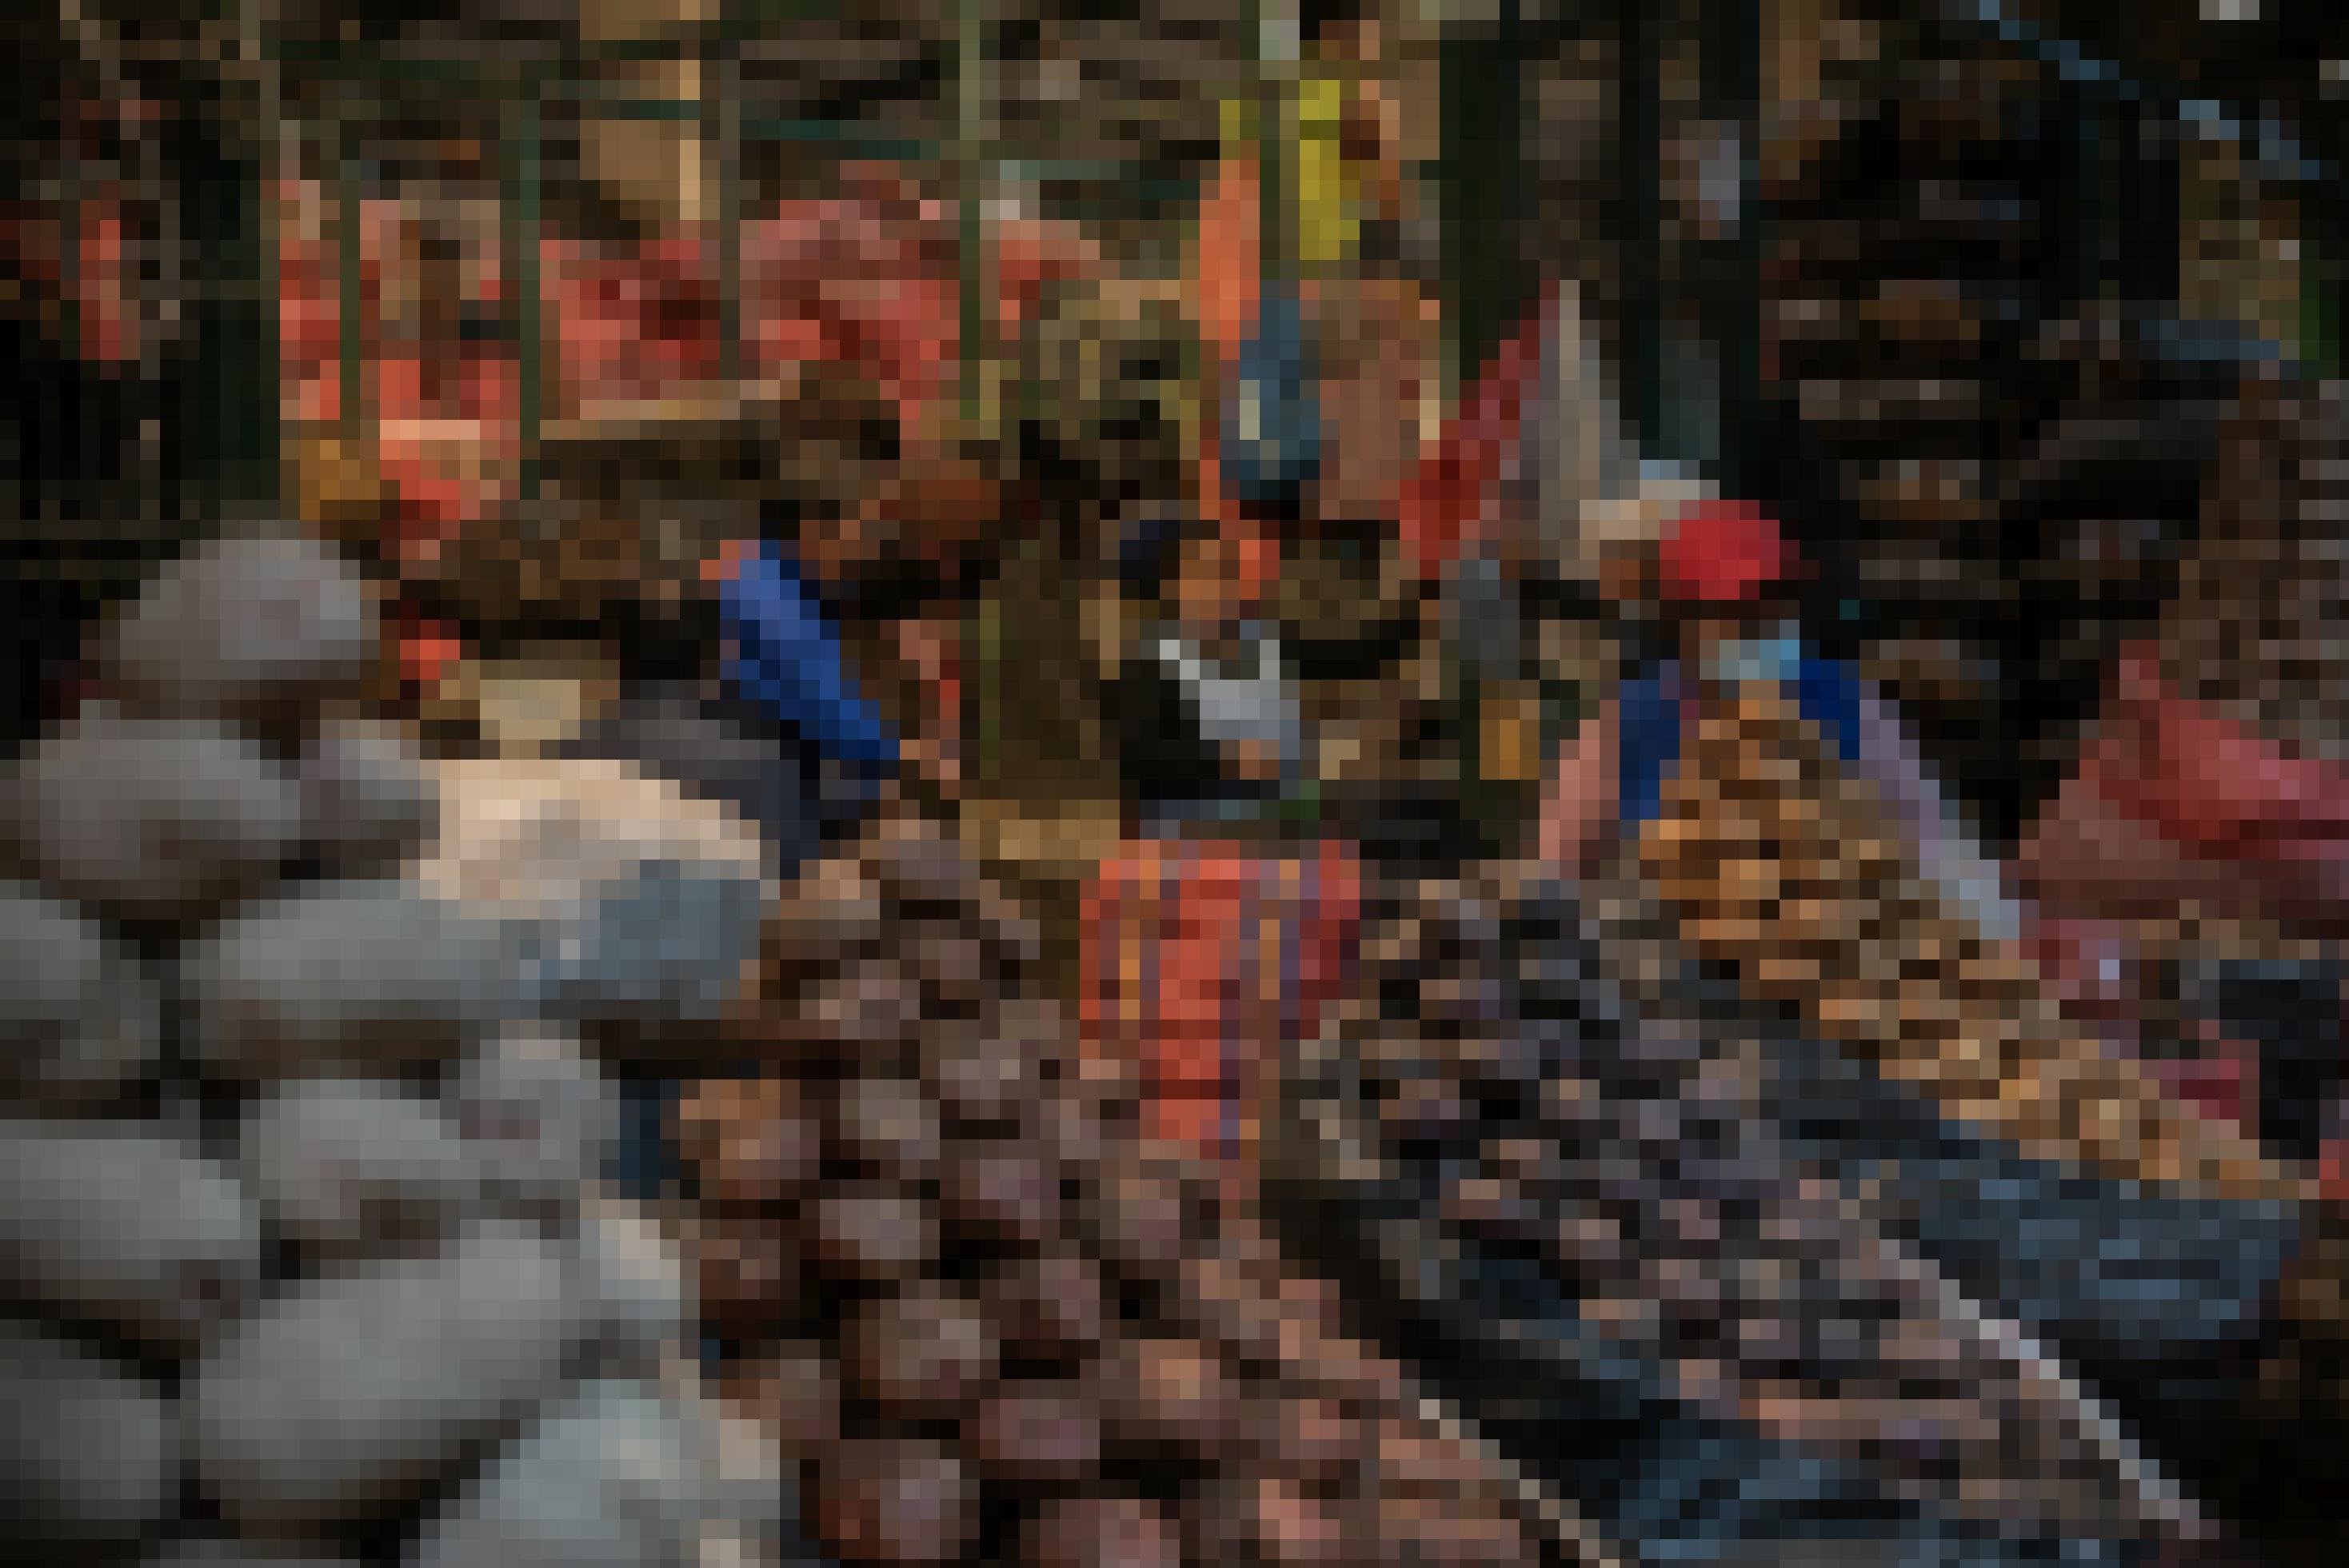 Eine Markthalle des Nachts, schummriges Licht. Im Vordergrund nach Sorten aufgestapelte Kartoffeln, dahinter Marktfrauen und noch meterhohe Stapel mit gefüllten Kartoffelsäcken.